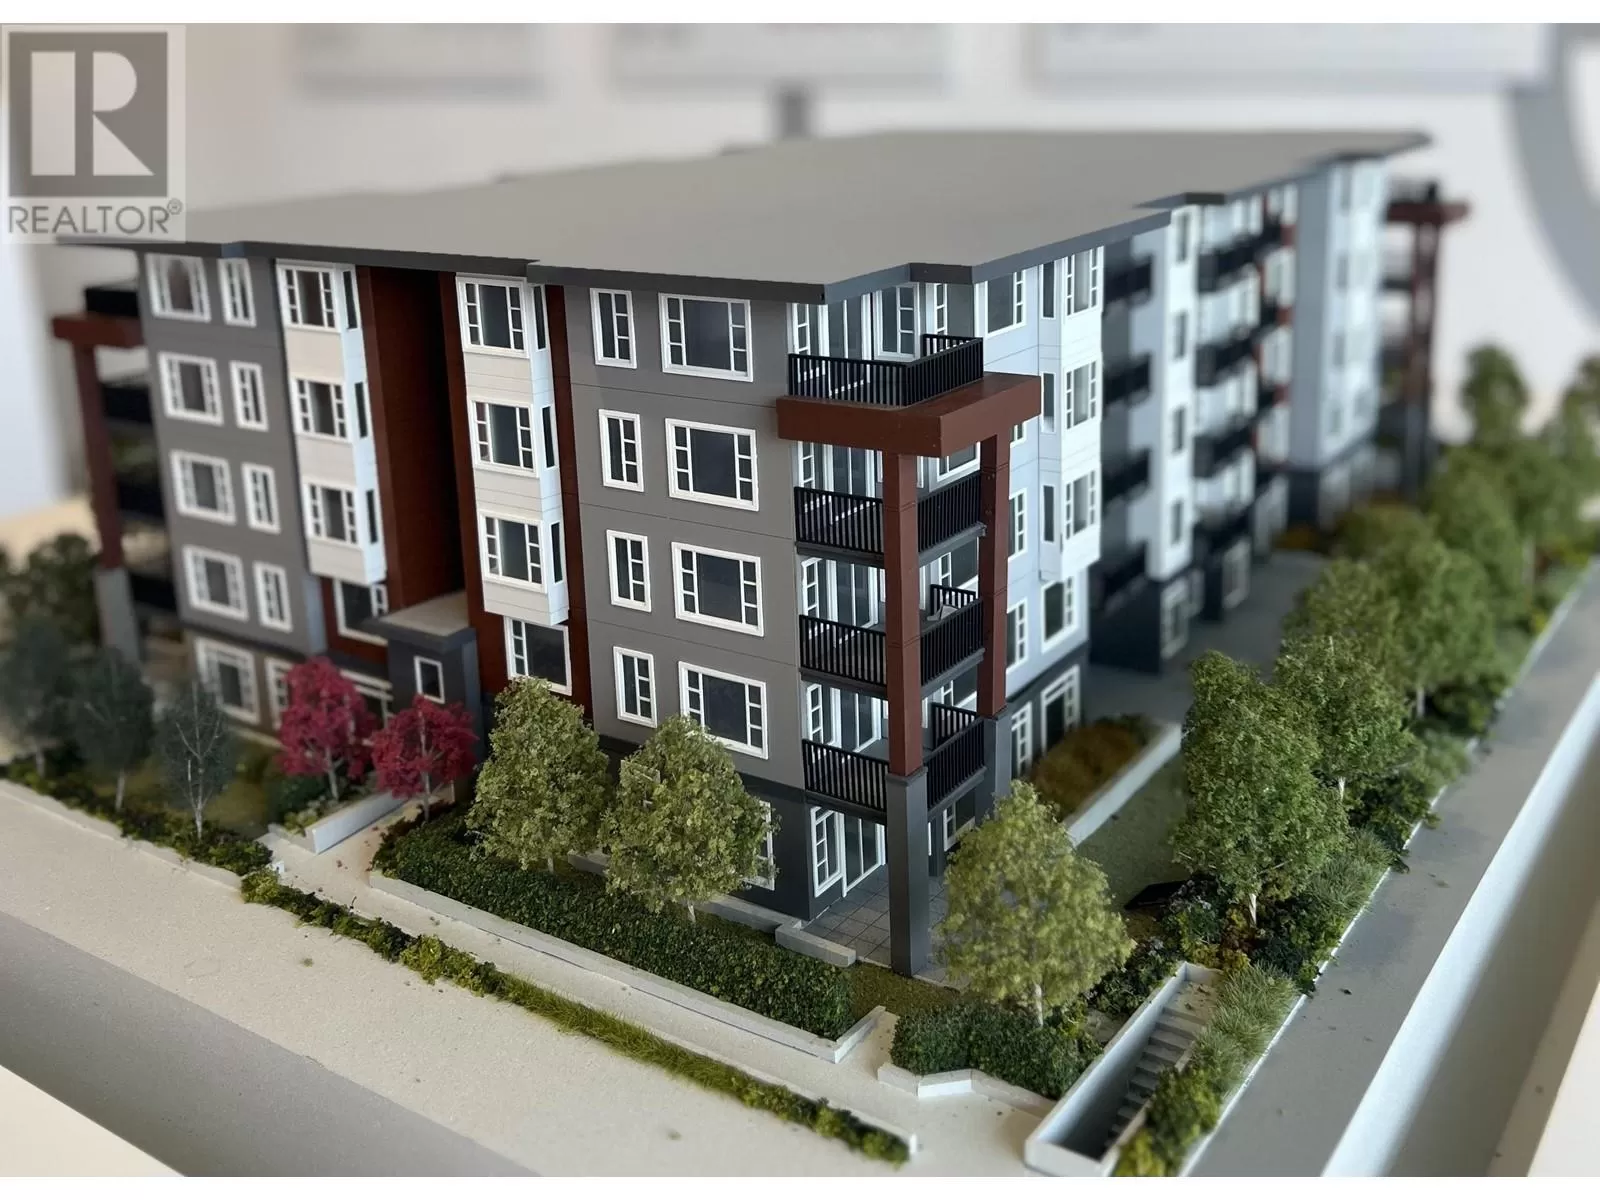 Apartment for rent: 507 22575 Brown Avenue, Maple Ridge, British Columbia V2X 3R6